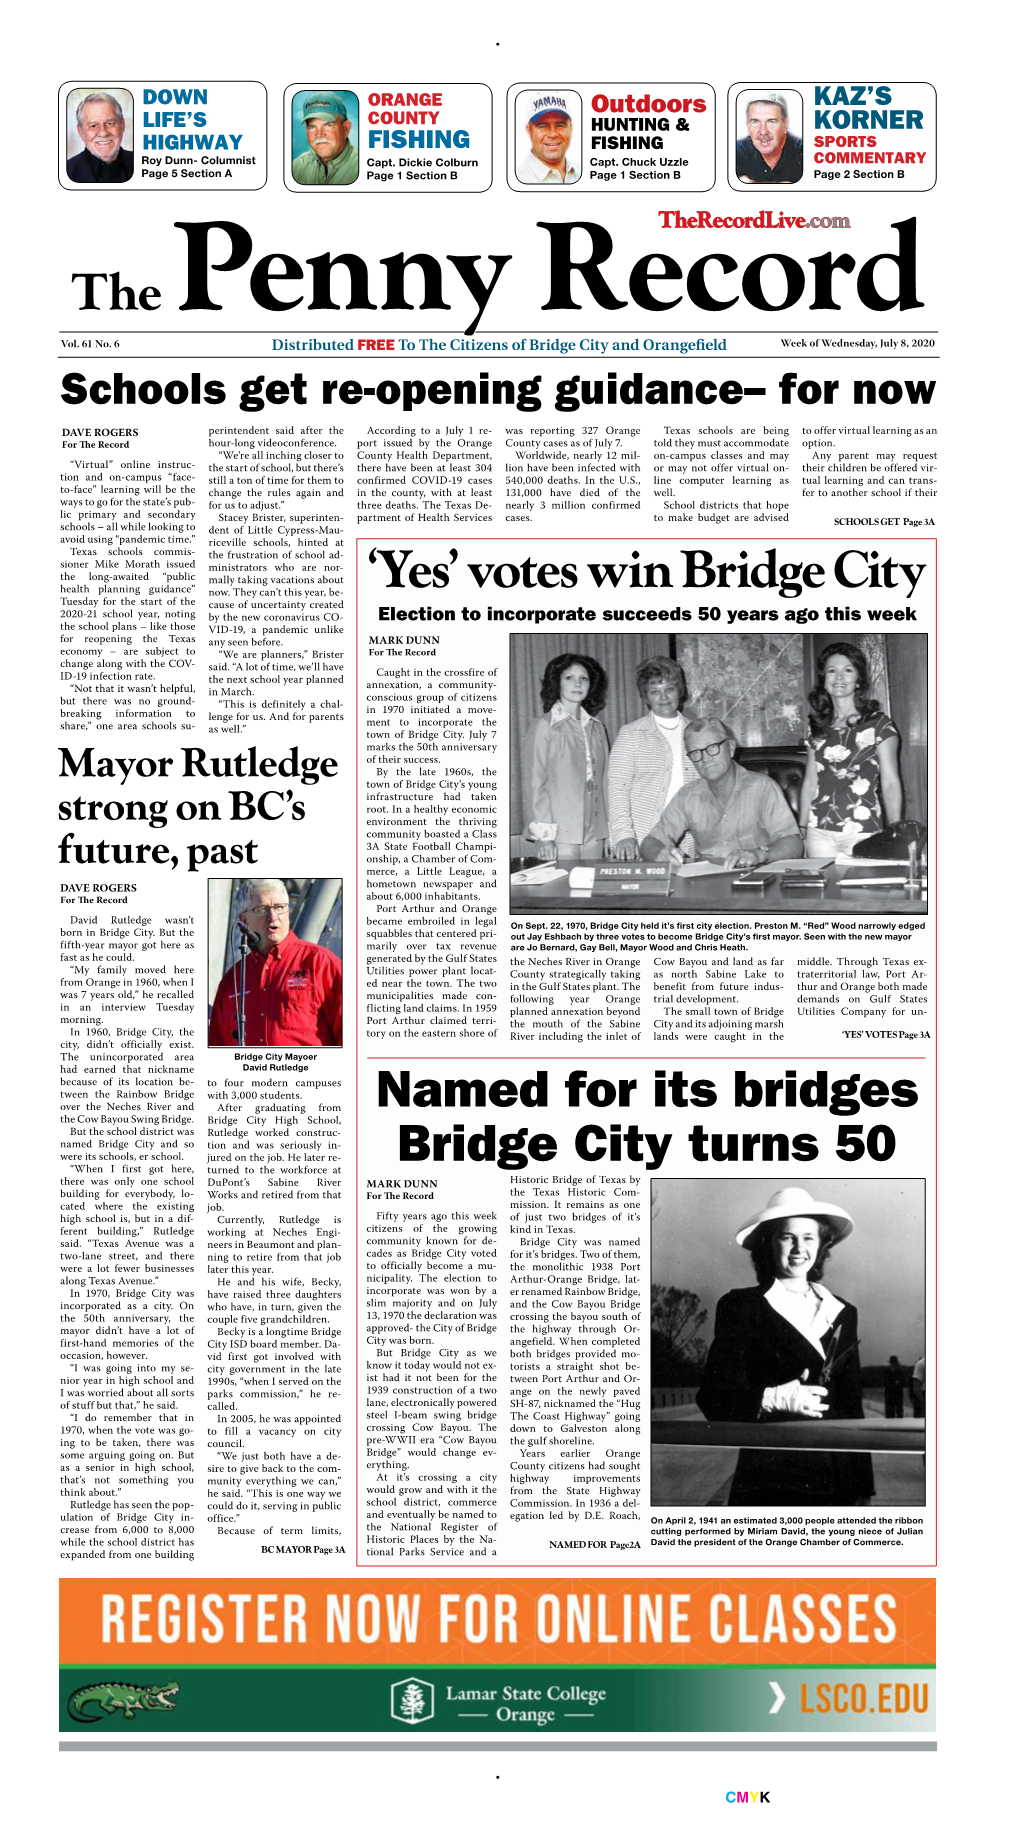 Votes Win Bridge City Now